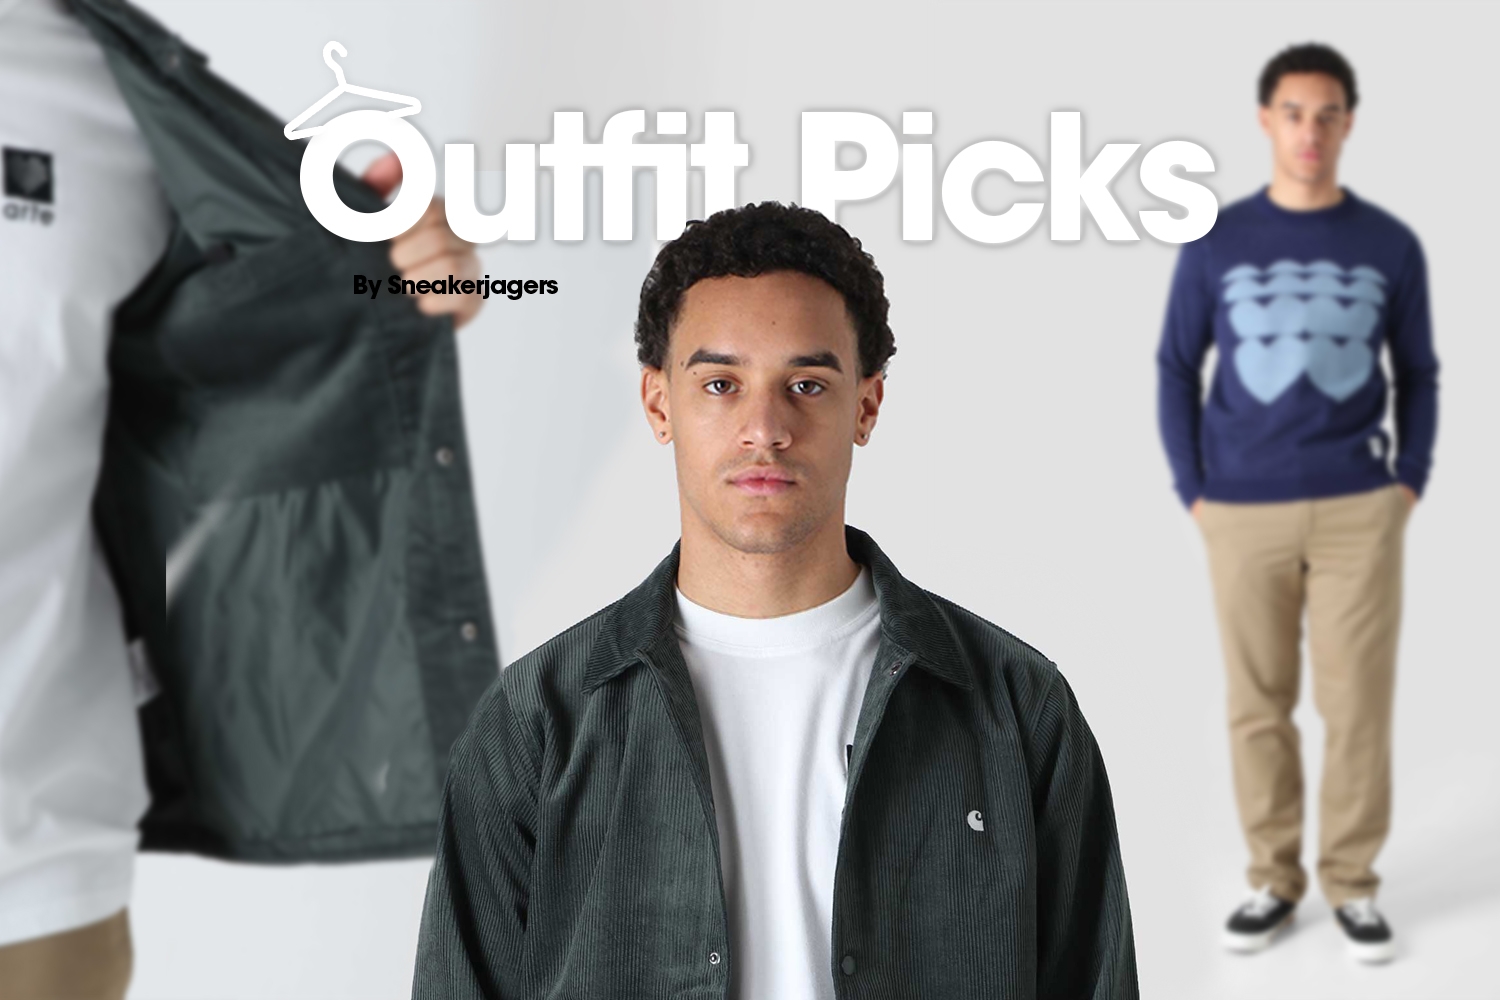 Outfit Picks by Sneakerjagers - week 6